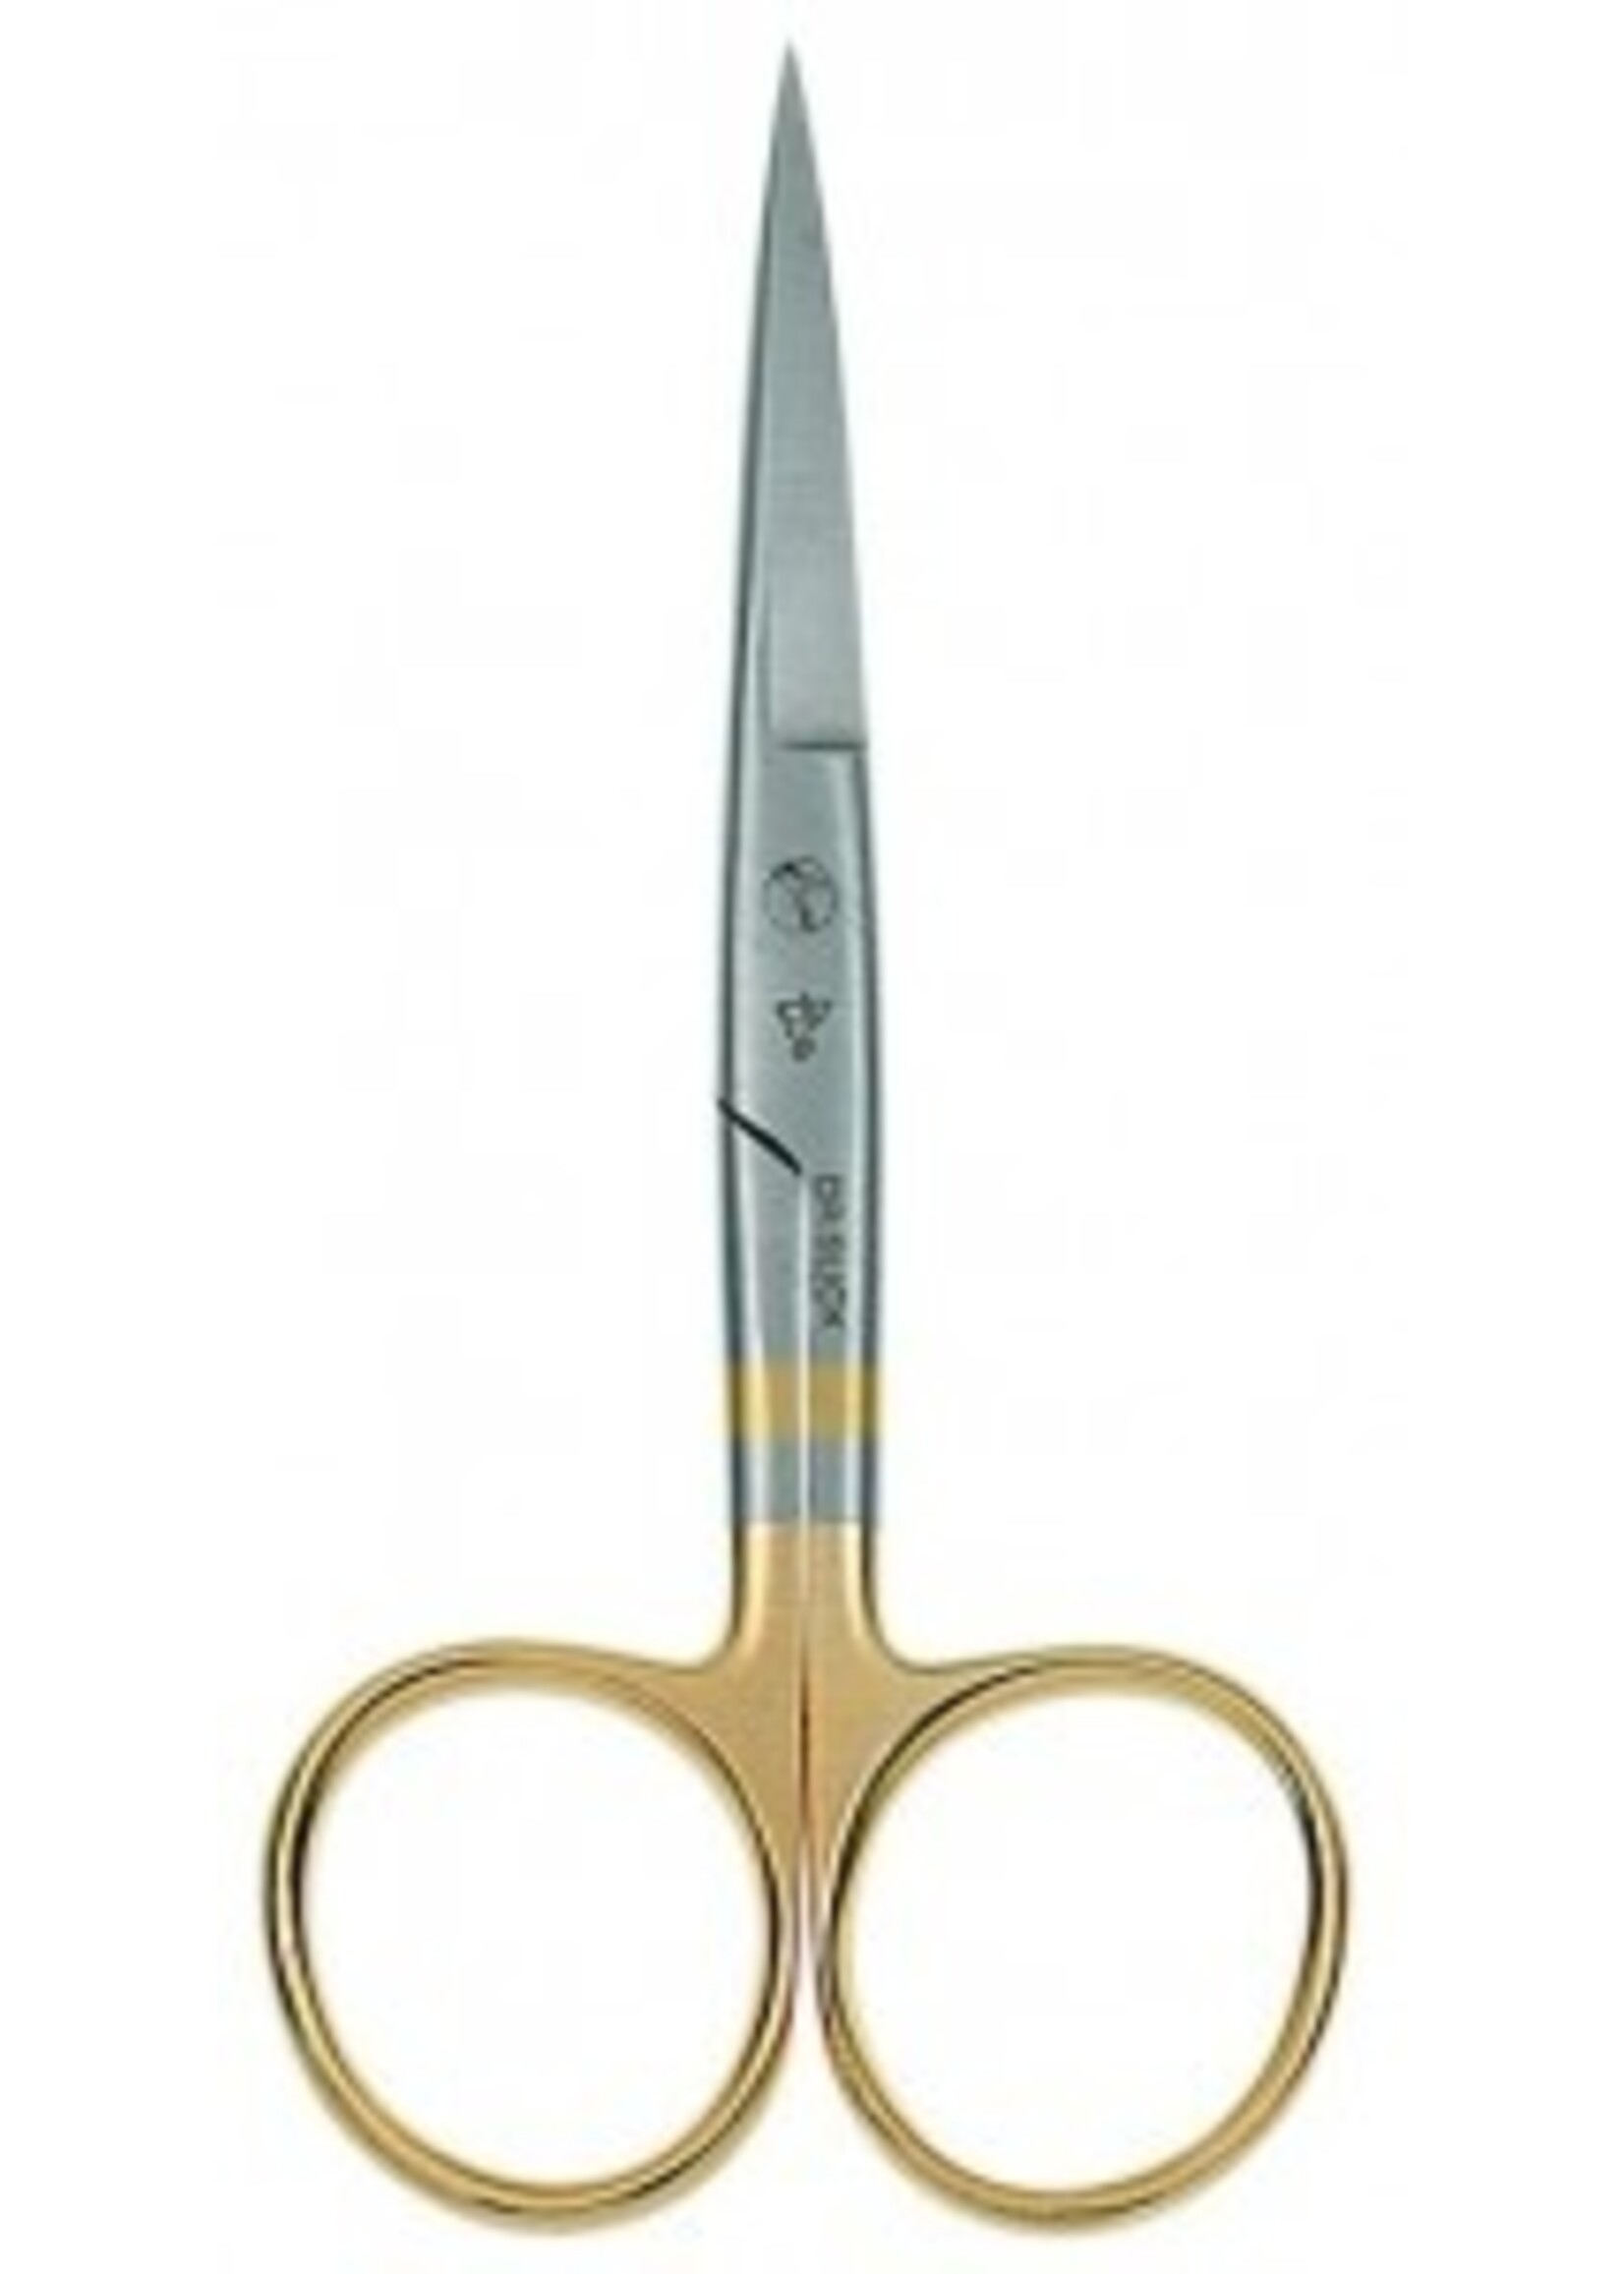 Dr. Slick Dr. Slick Hair Scissor, 4-1/2", Gold Loops, Curved